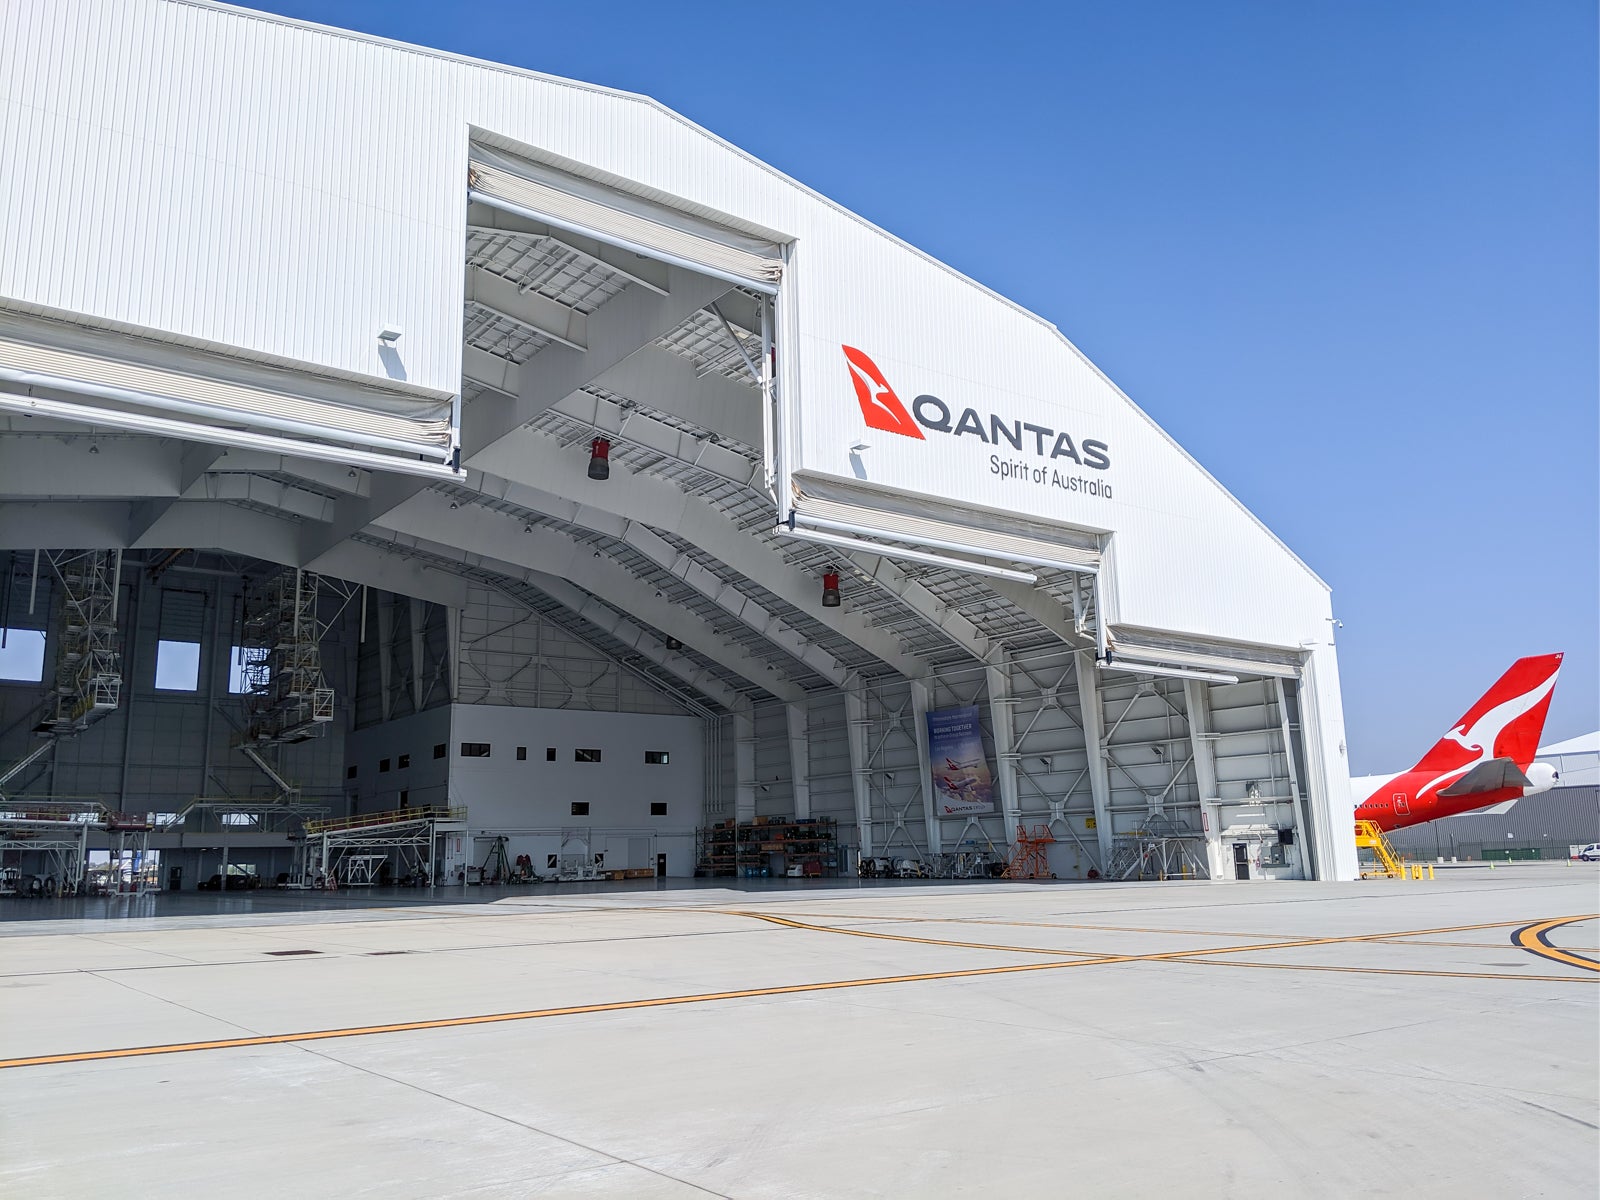 Qantas LAX A380 Hanger